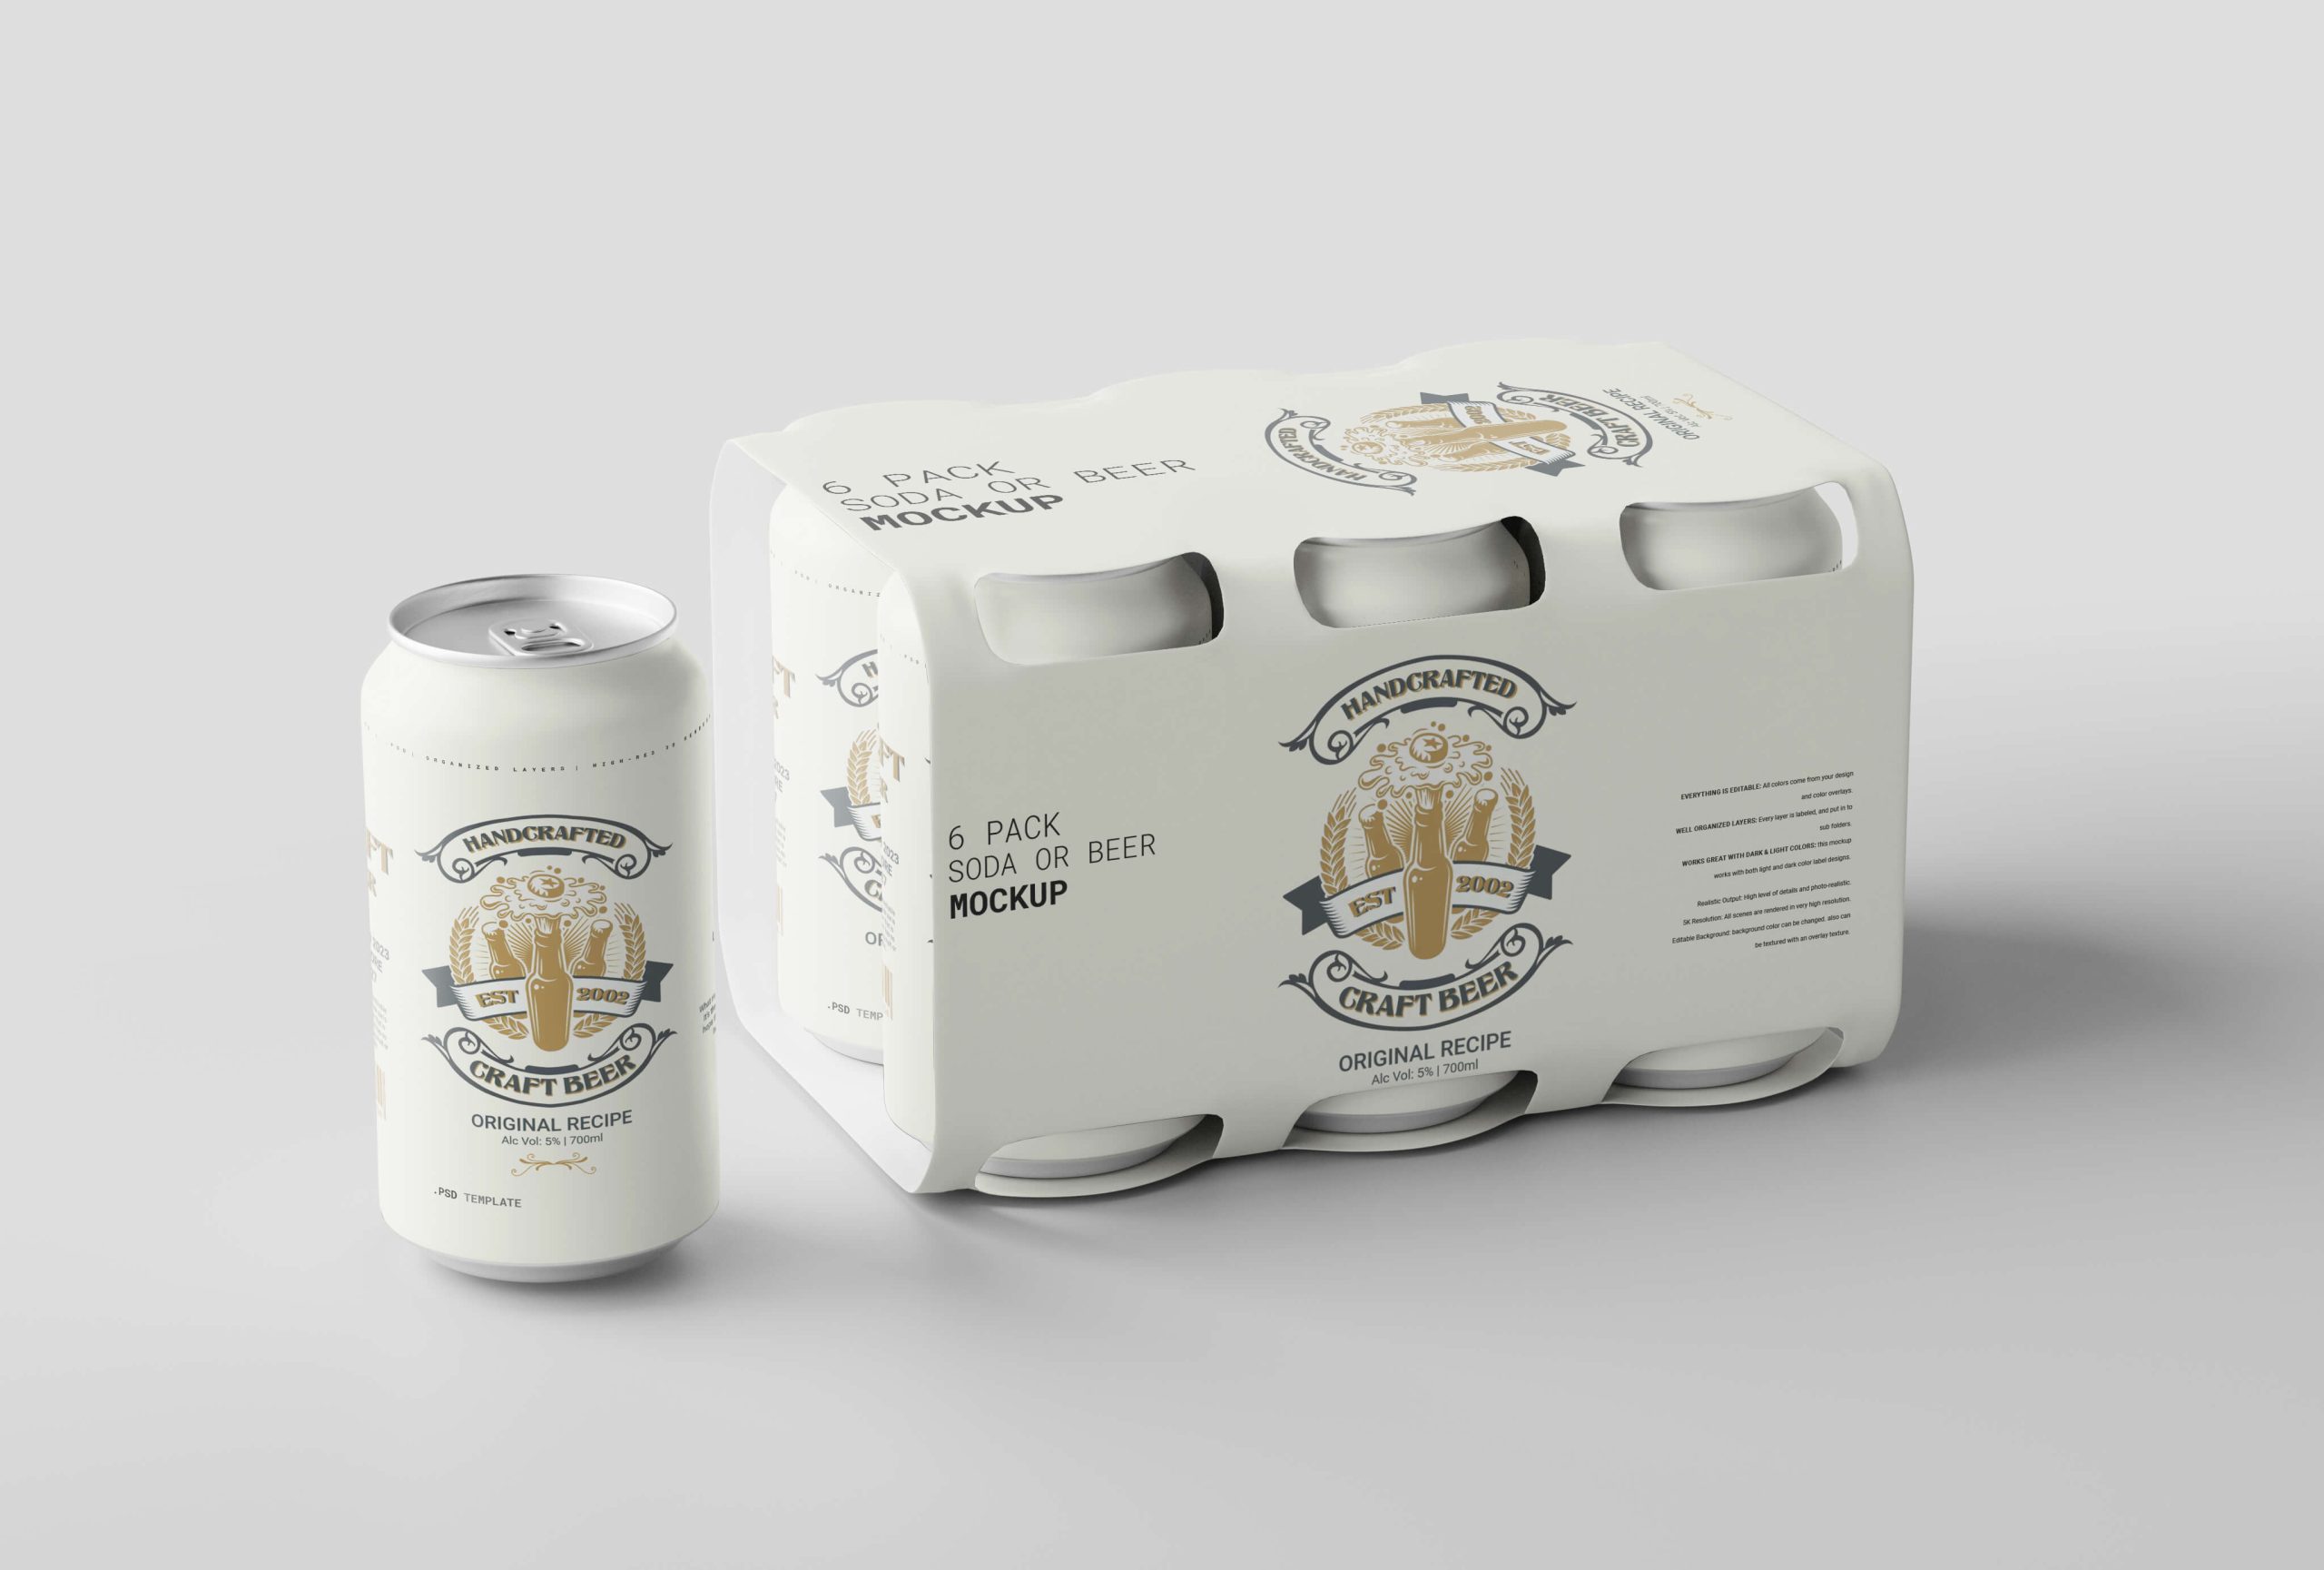 beer packaging